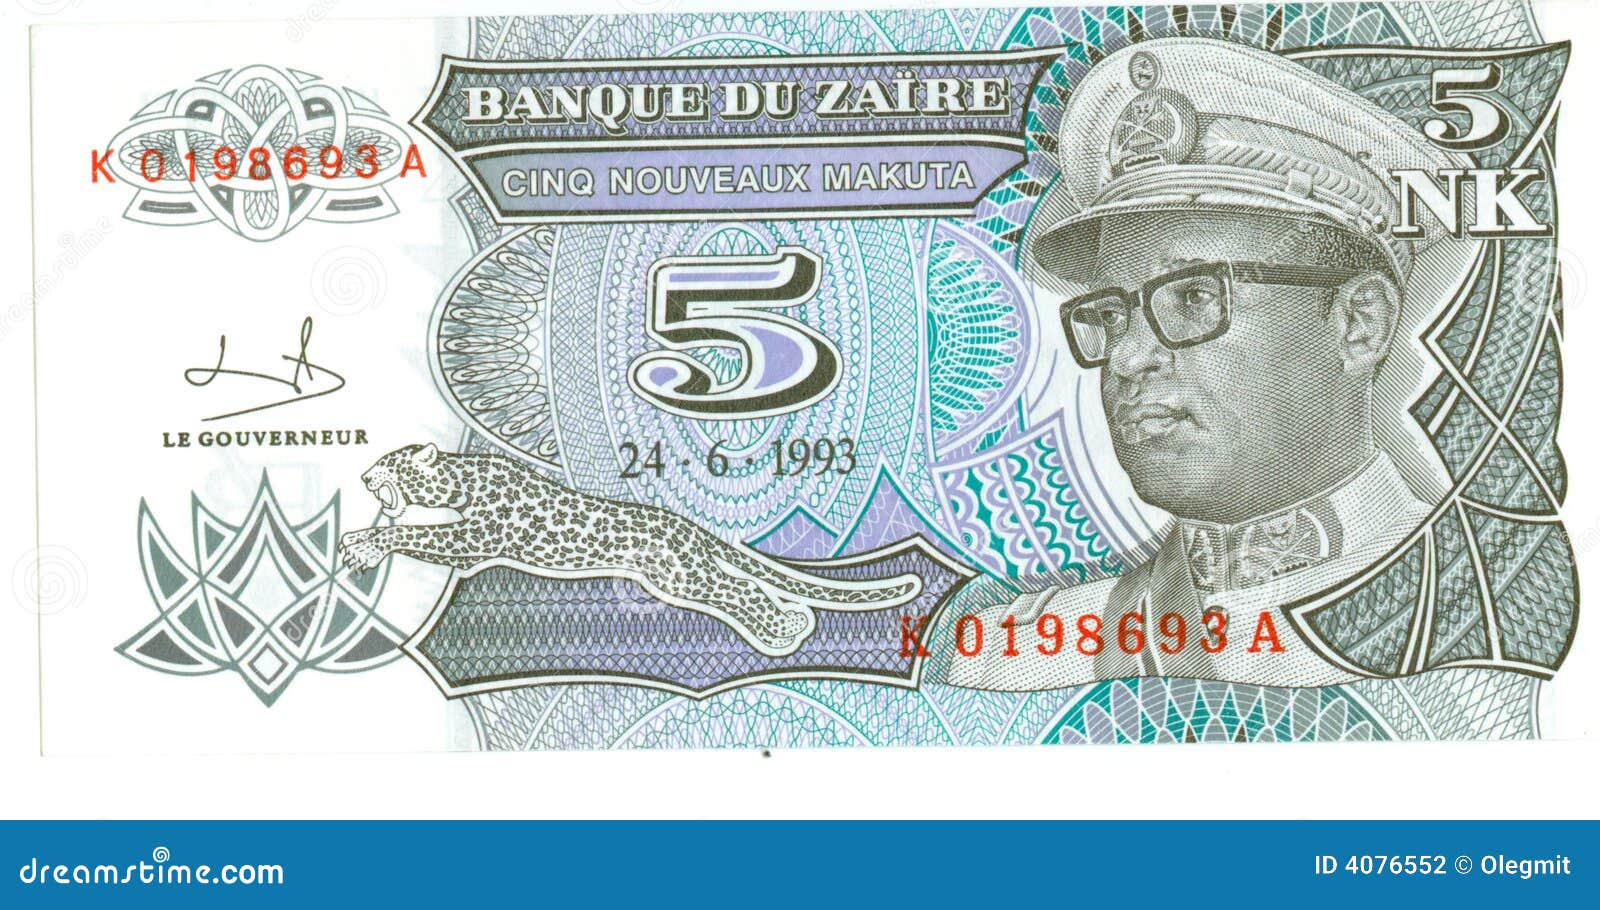 5 nk bill of zaire, 1993